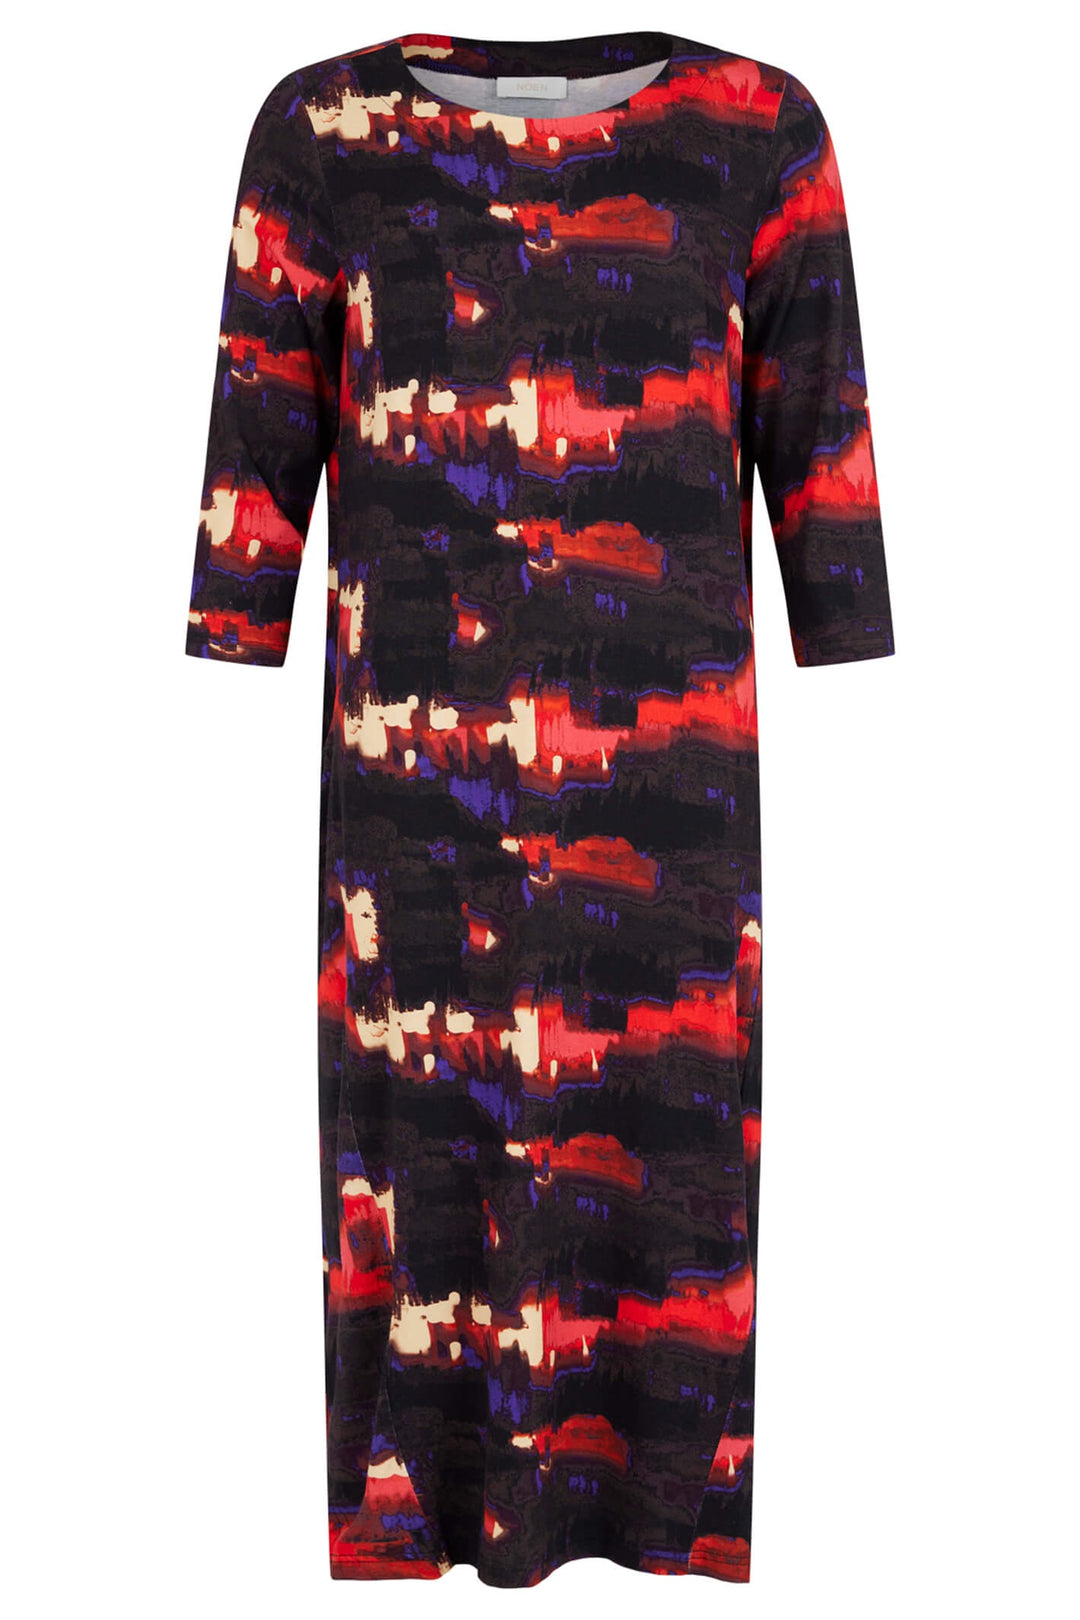 Noen Kjole 232-88463-81120 Black Multi Print Dress - Dotique Chesterfield